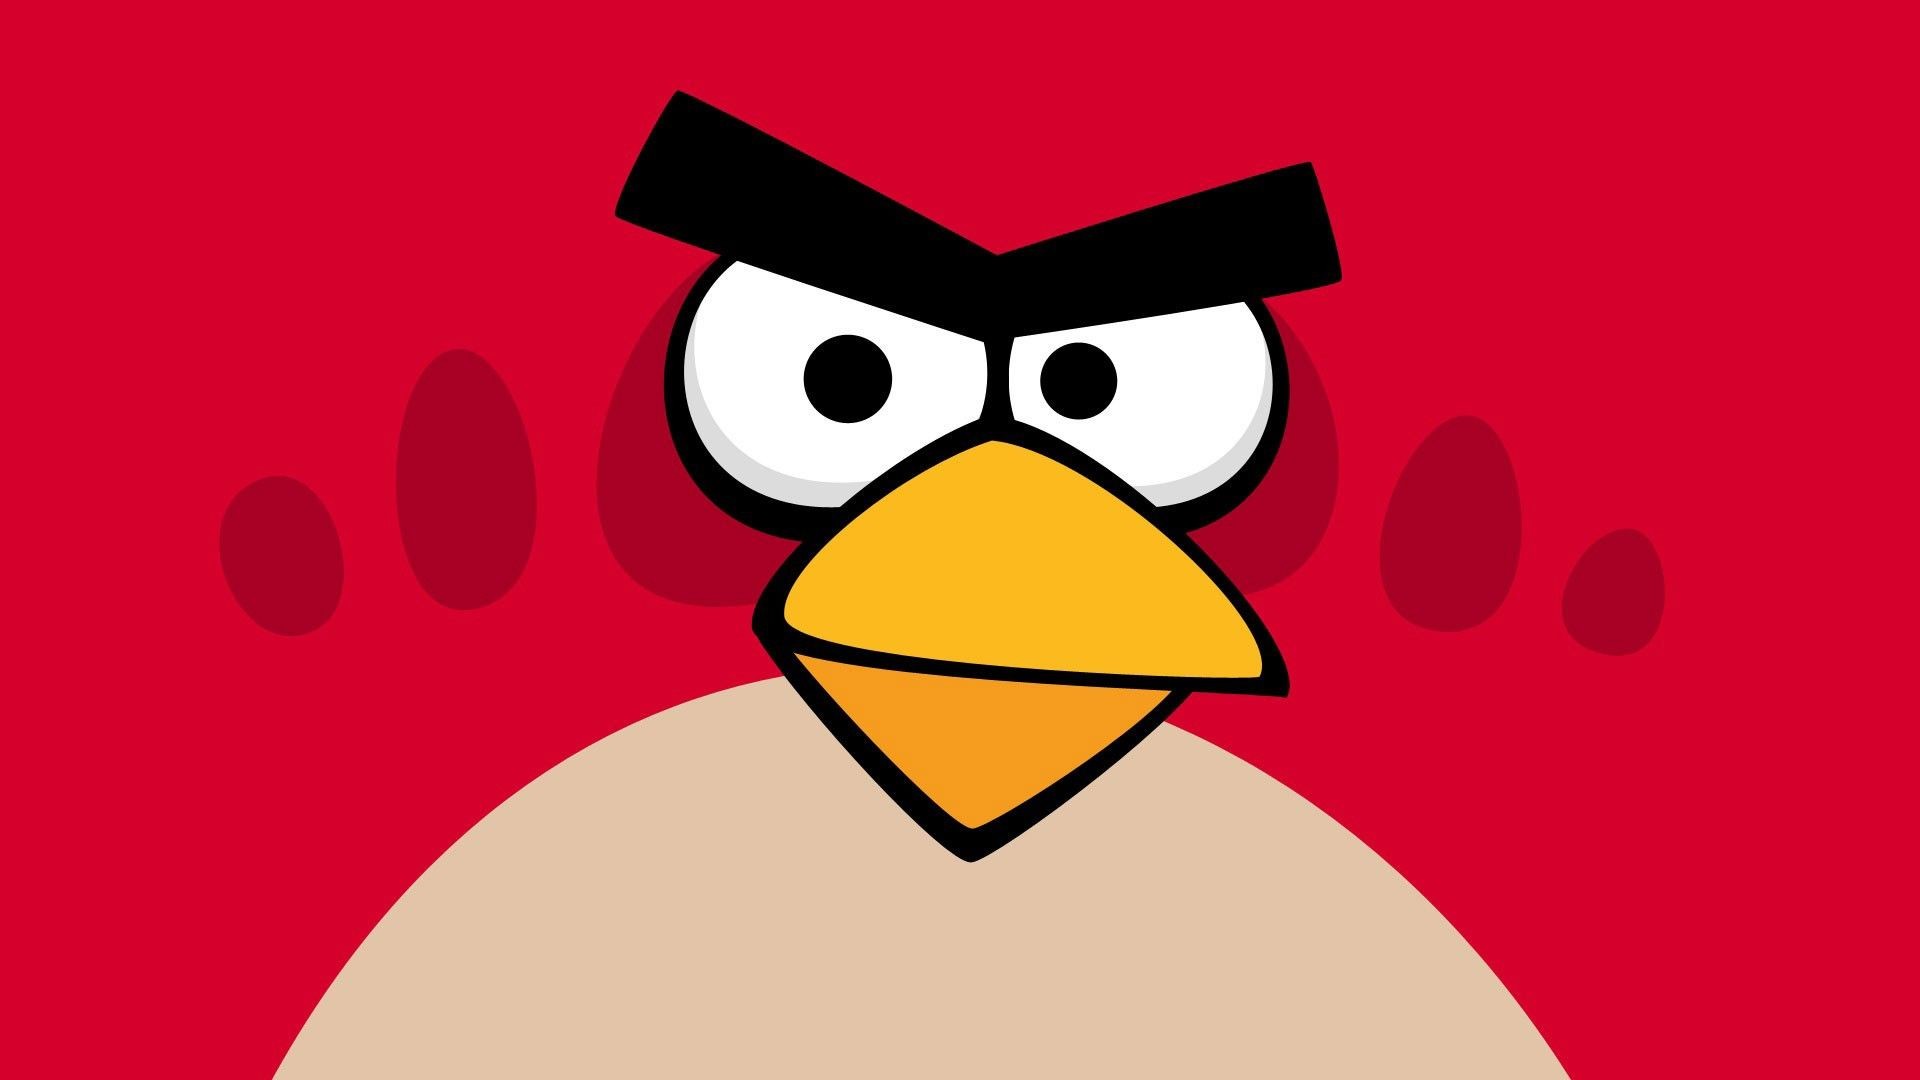 Обои иллюстрация мультфильм Angry Birds на рабочий стол